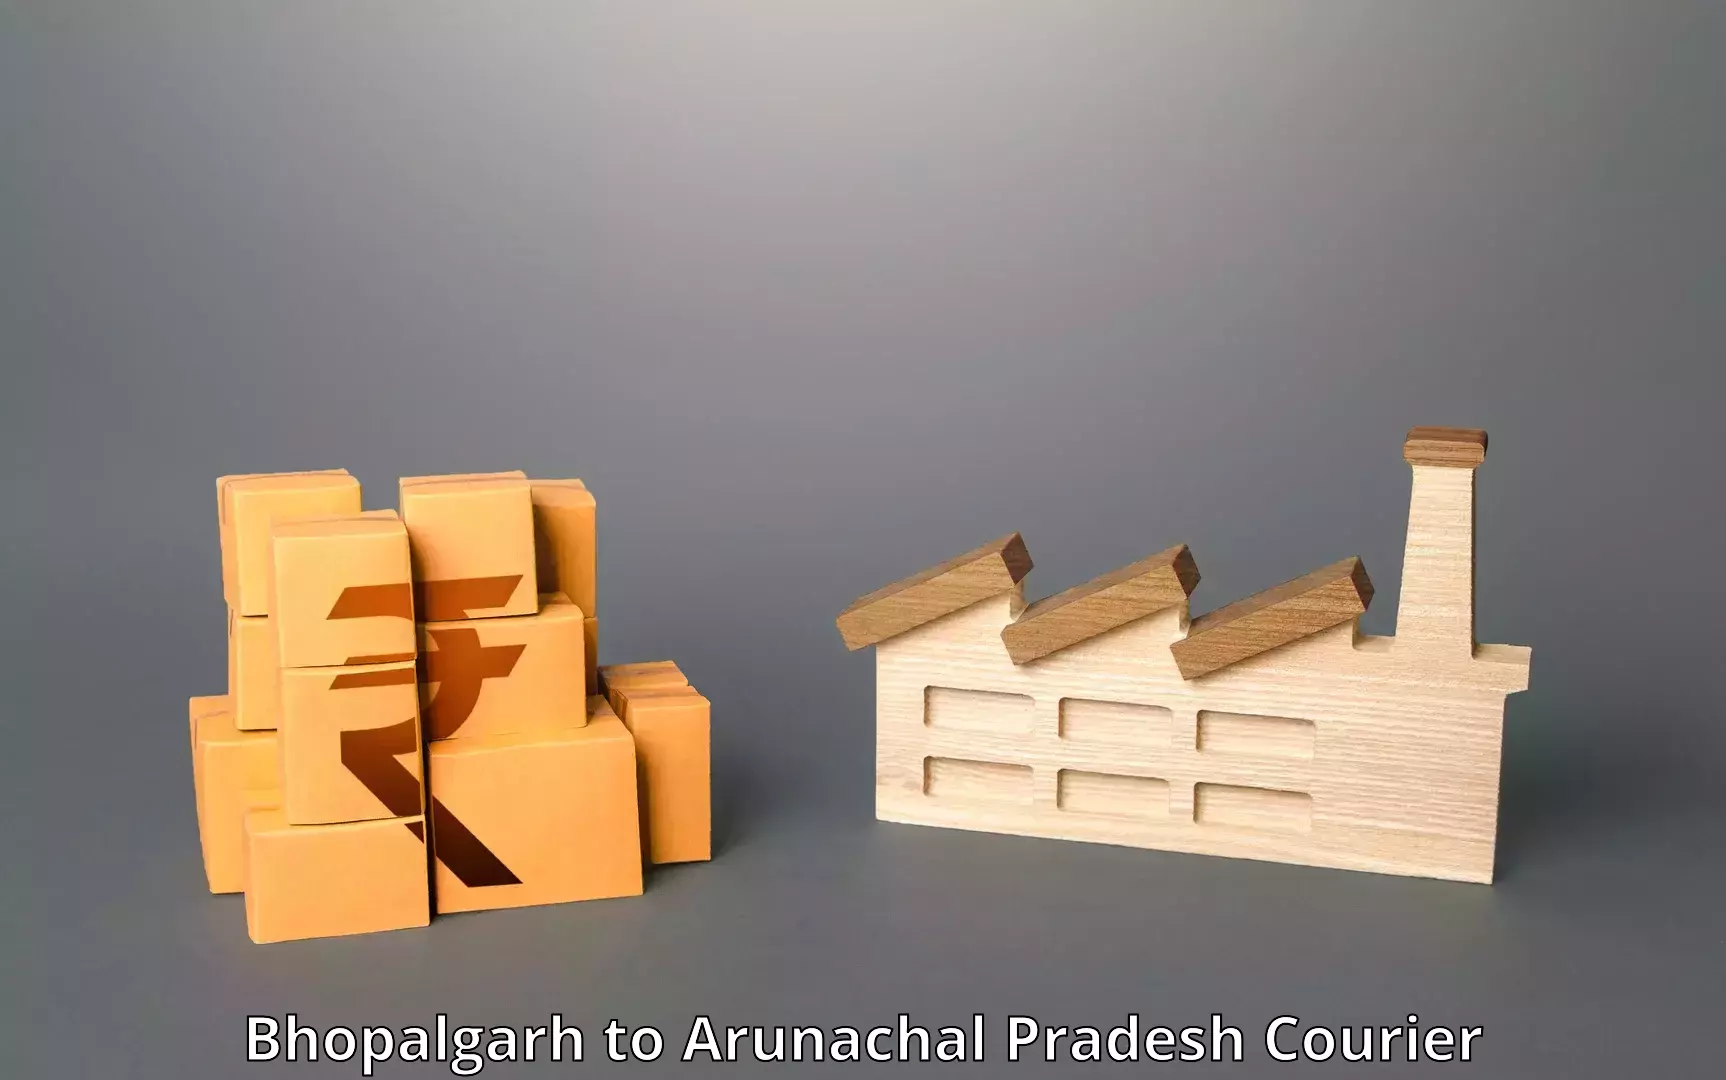 Reliable shipping partners Bhopalgarh to Namsai